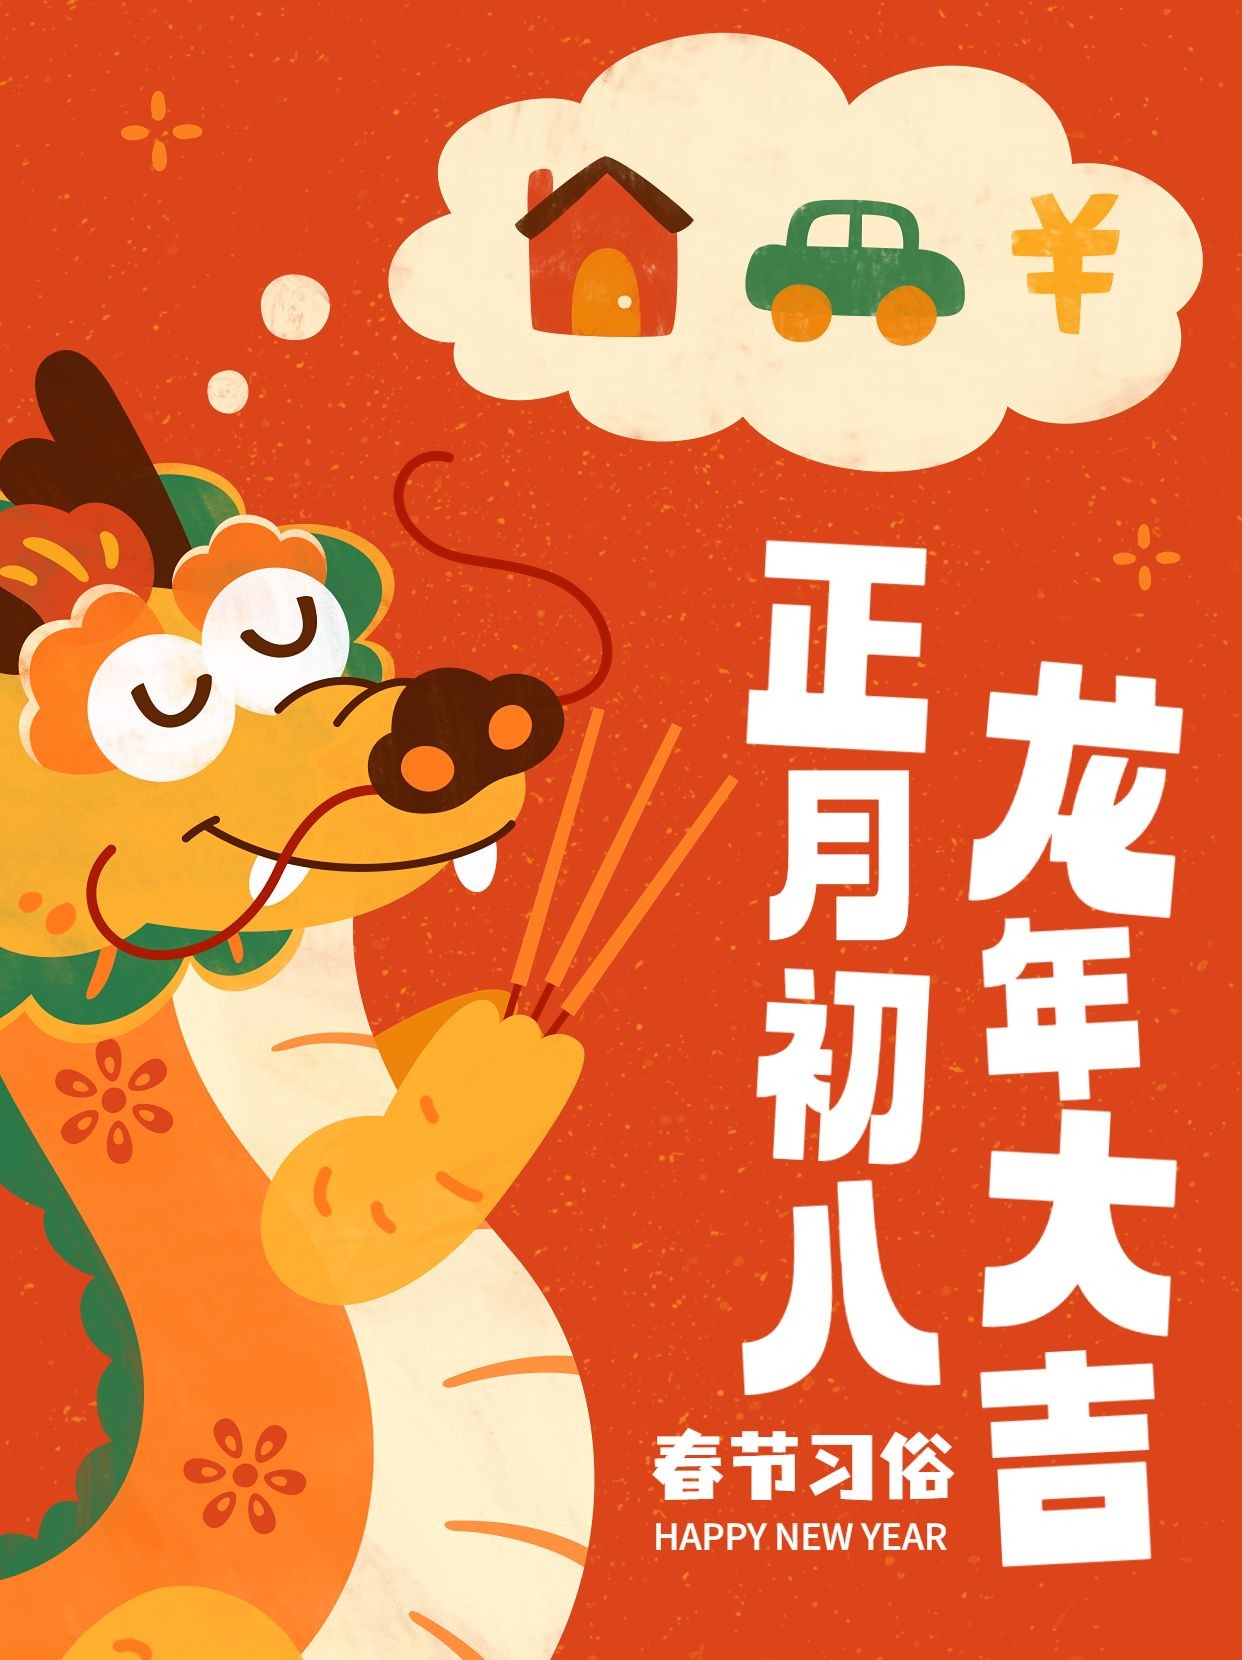 春节正月初八习俗科普套系小红书封面